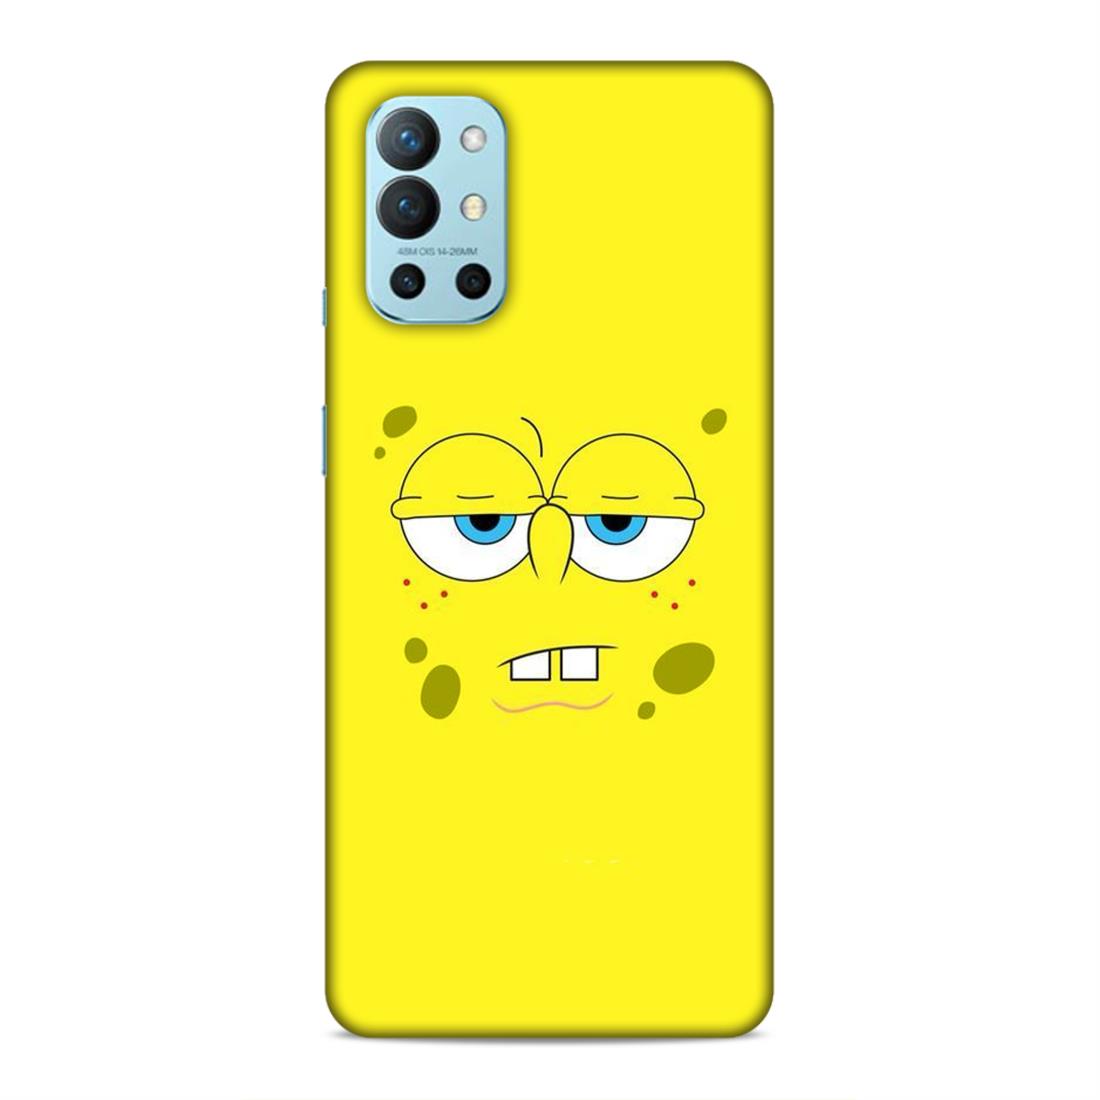 Spongebob Hard Back Case For OnePlus 8T / 9R